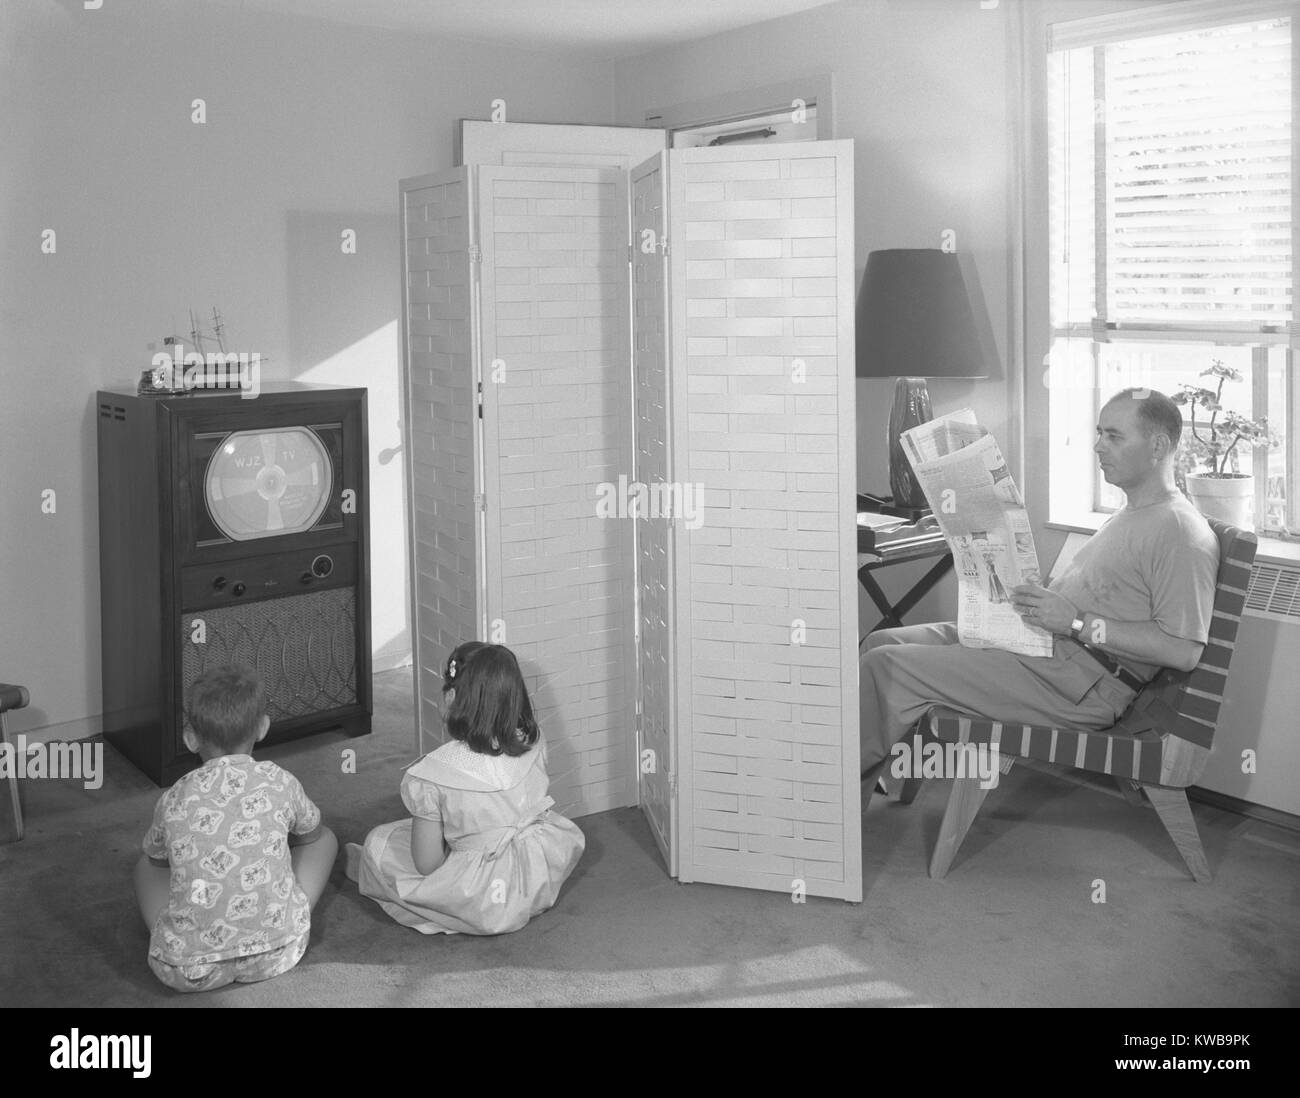 Père lisant le journal, tandis que deux enfants d'anticiper le début de la télévision. Dans un appartement de la ville de New York, le téléviseur affiche un modèle de test avant de commencer sa journée de radiodiffusion. Le 12 juillet 1950. (BSLOC   162 13 2014) Banque D'Images